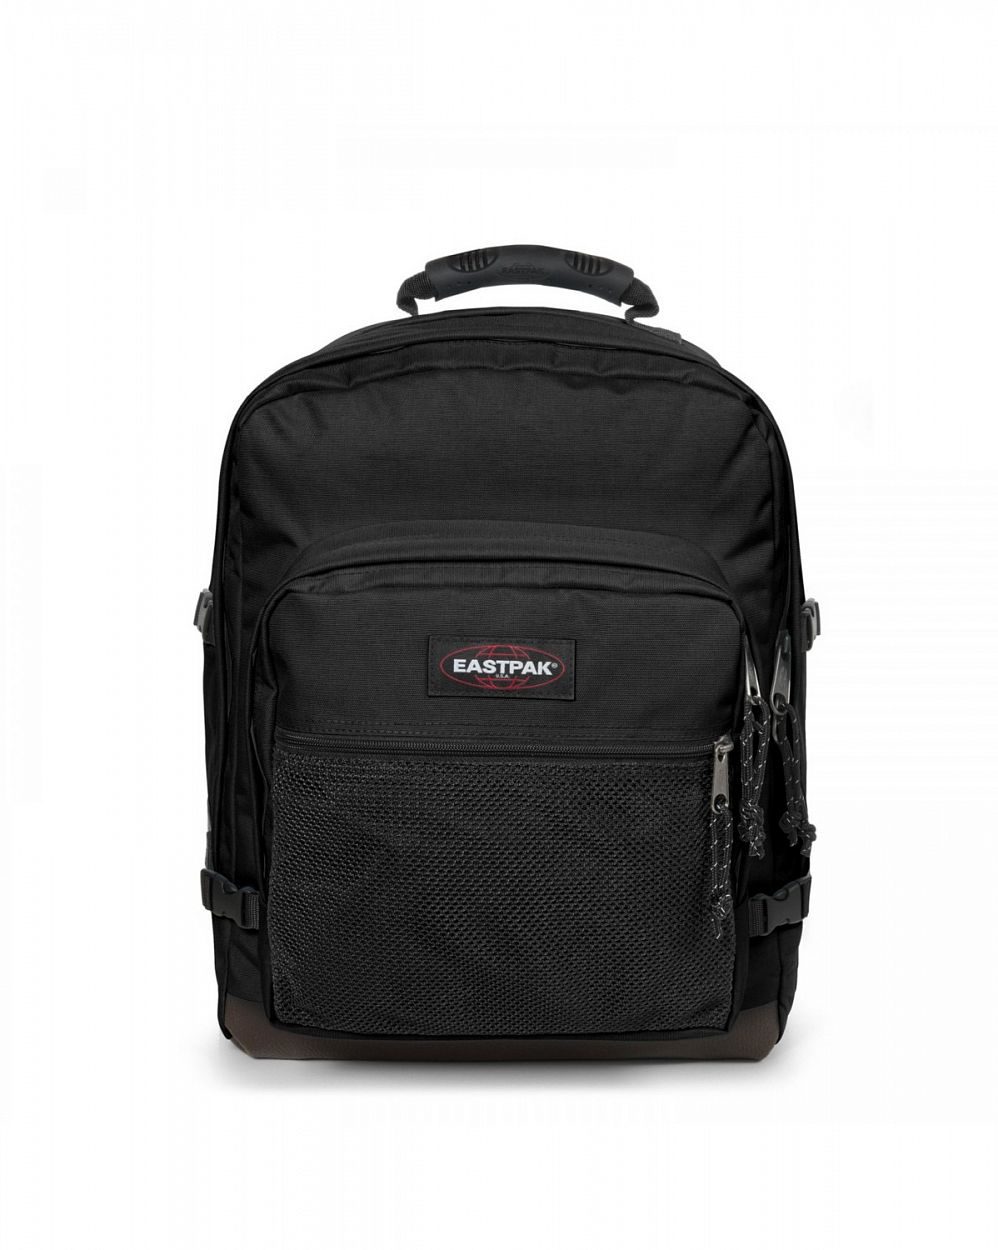 Рюкзак водоотталкивающий особопрочный с отделом для 15 ноутбука Eastpak EK050008 ULtimate Black отзывы